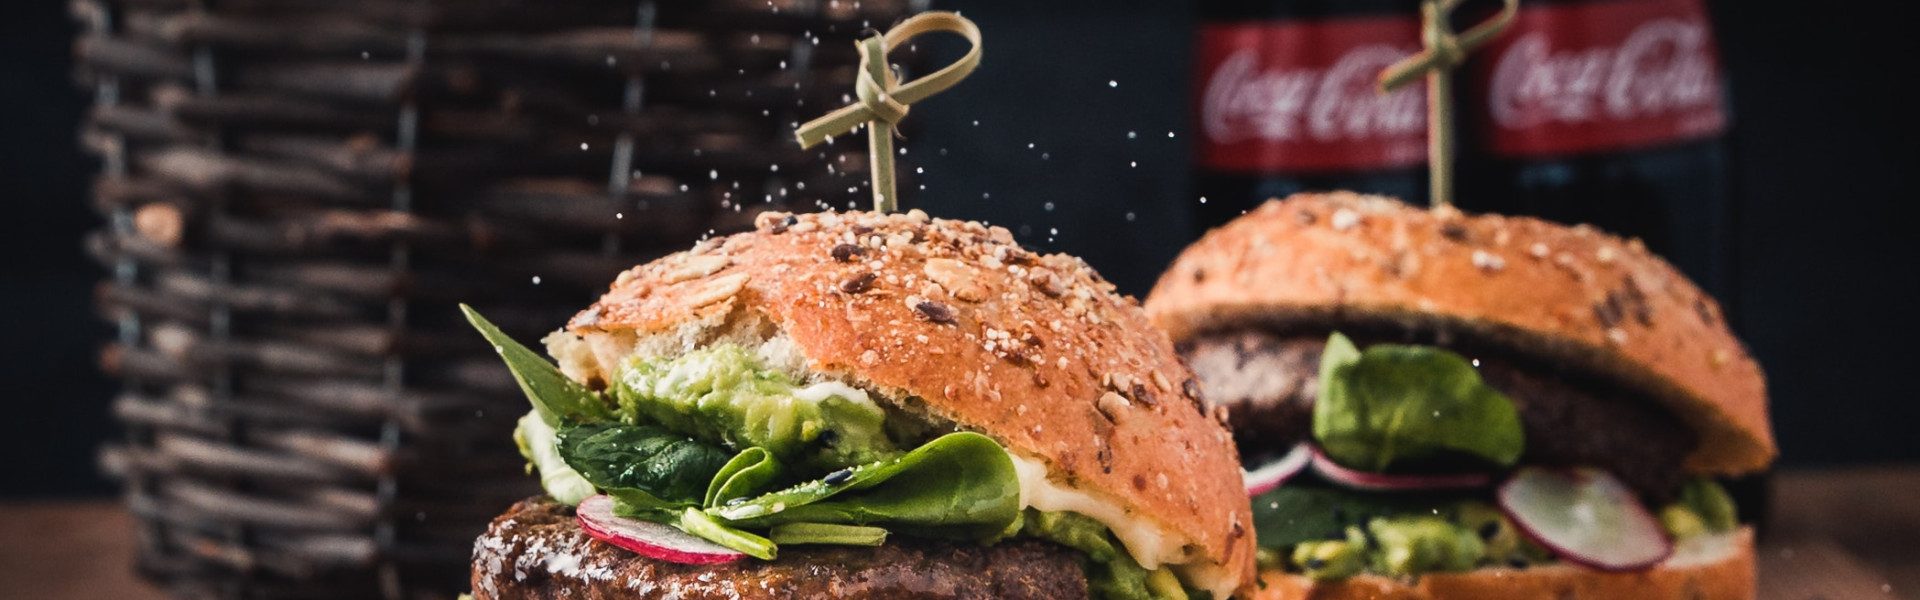 Pourquoi ouvrir une franchise dans le secteur CHR - Burger ?